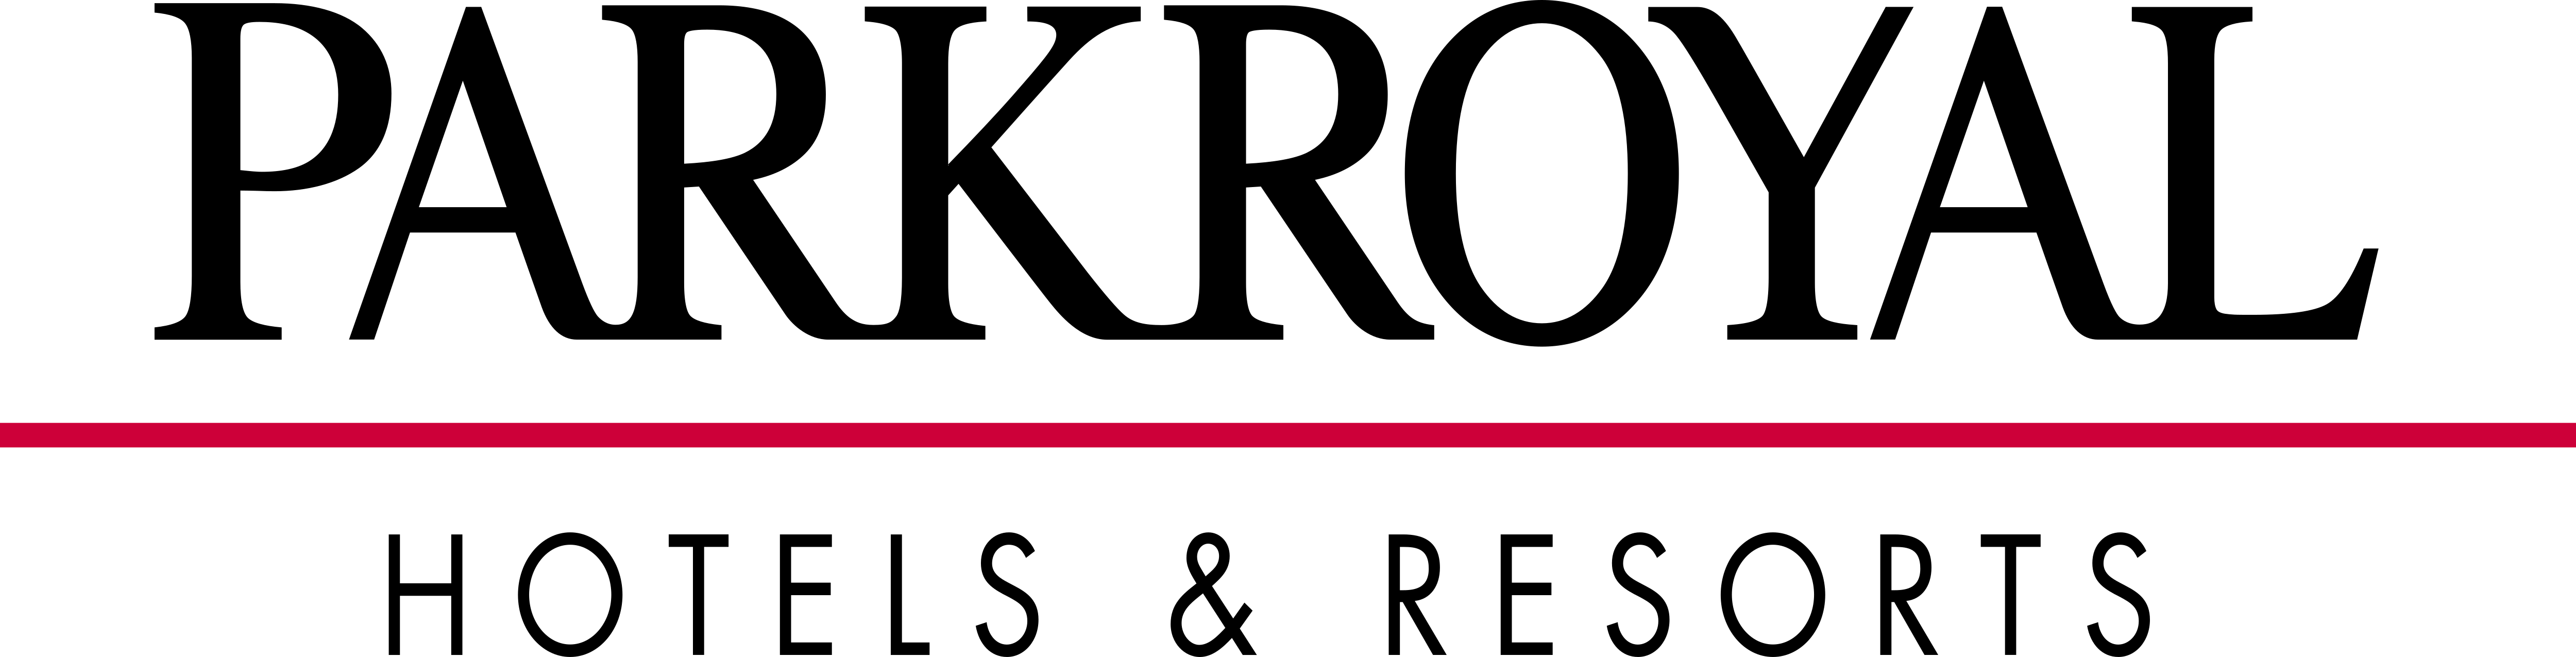 Park Royal Brand Logo